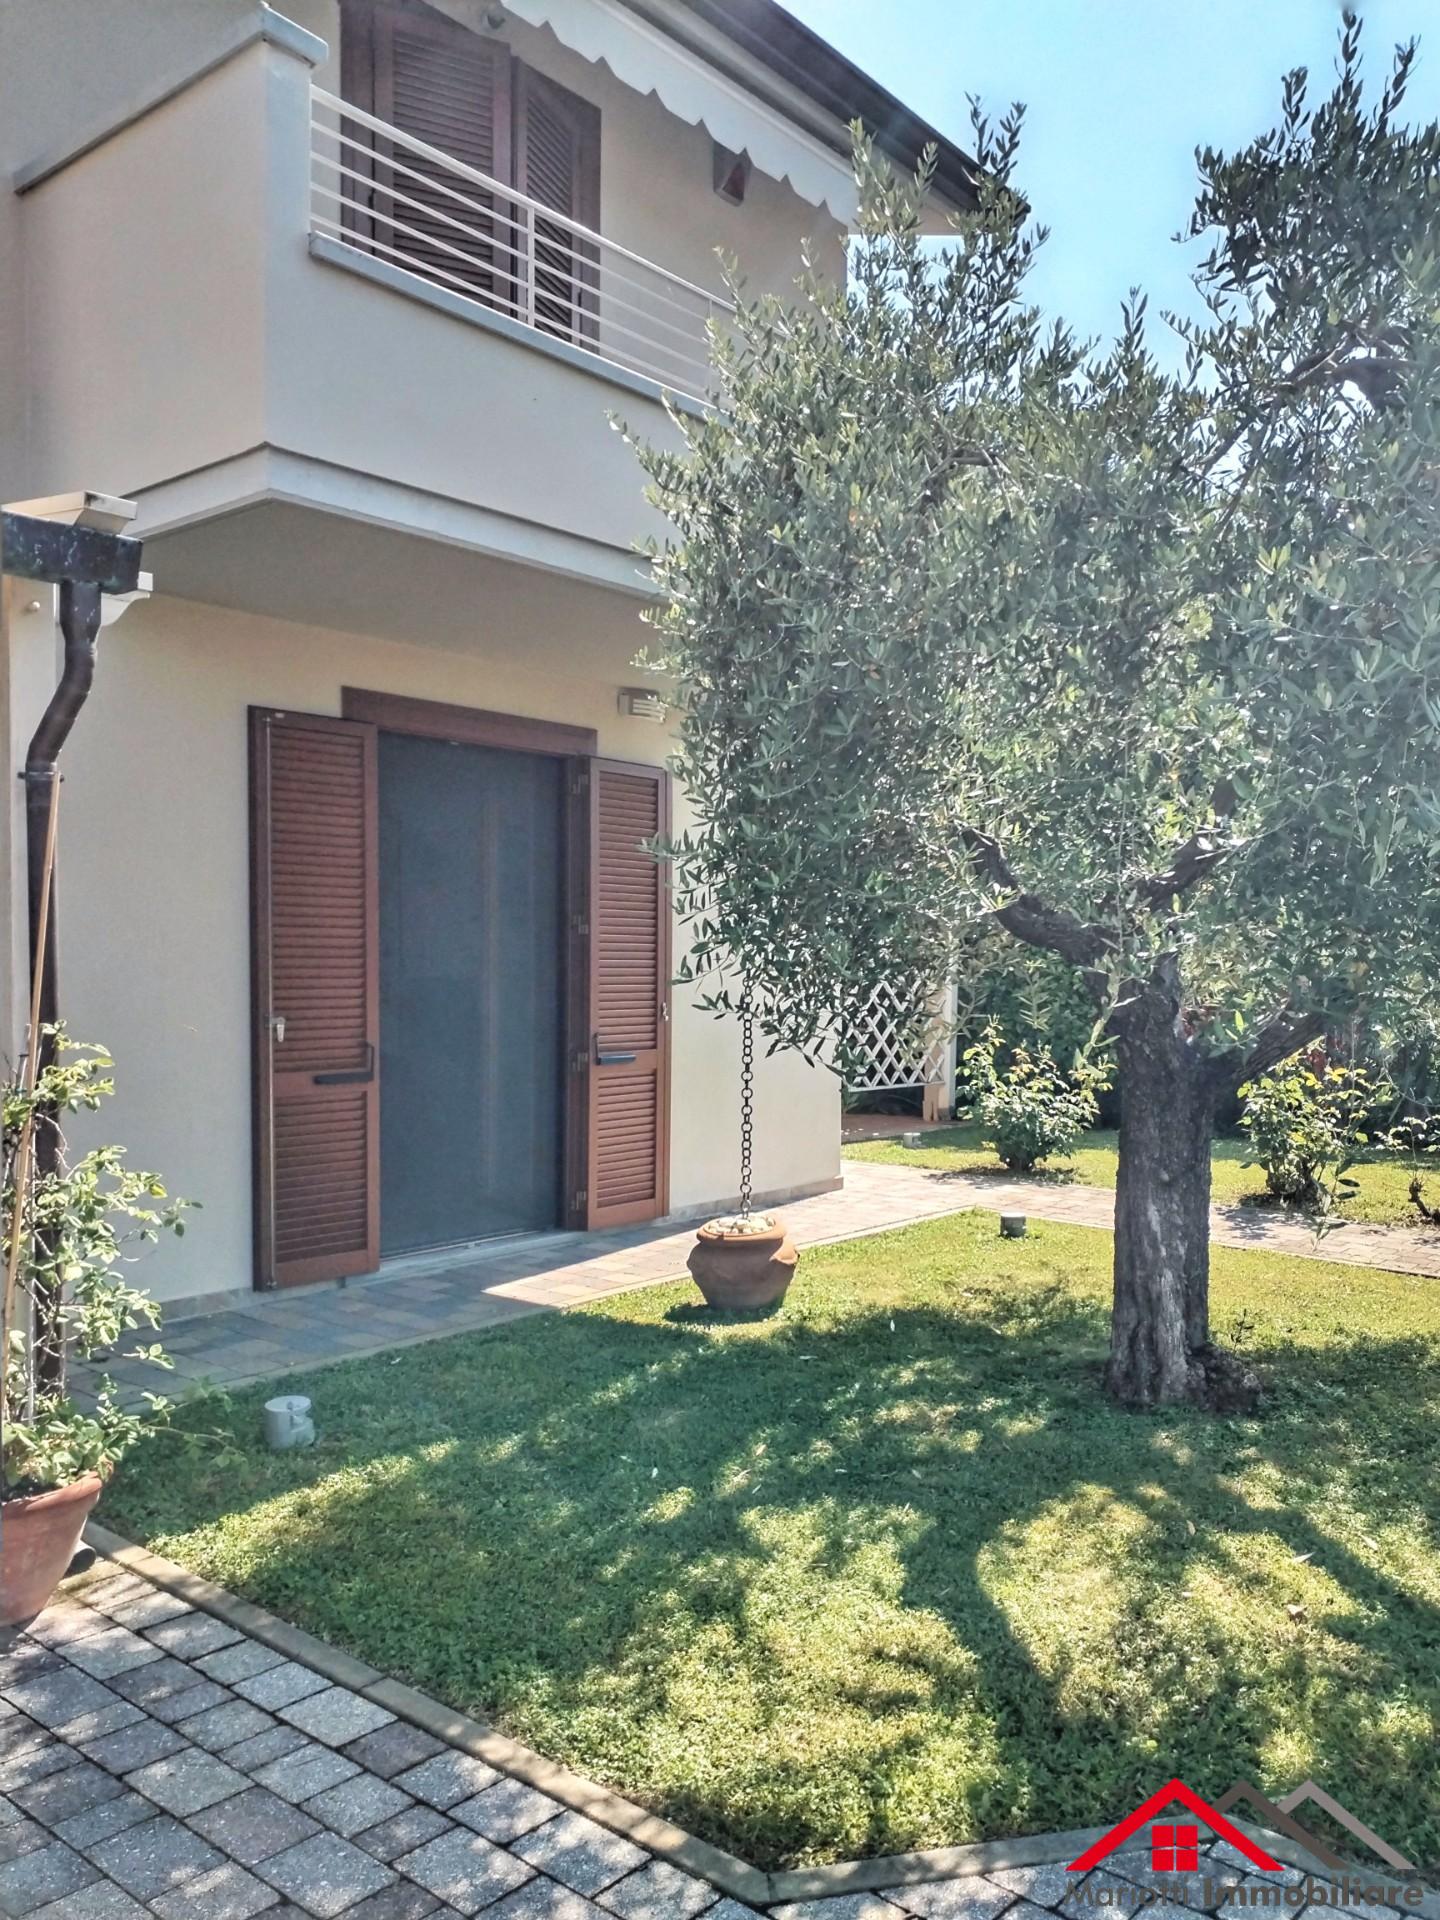 Villetta quadrifamiliare in vendita a San Giuliano Terme (PI)